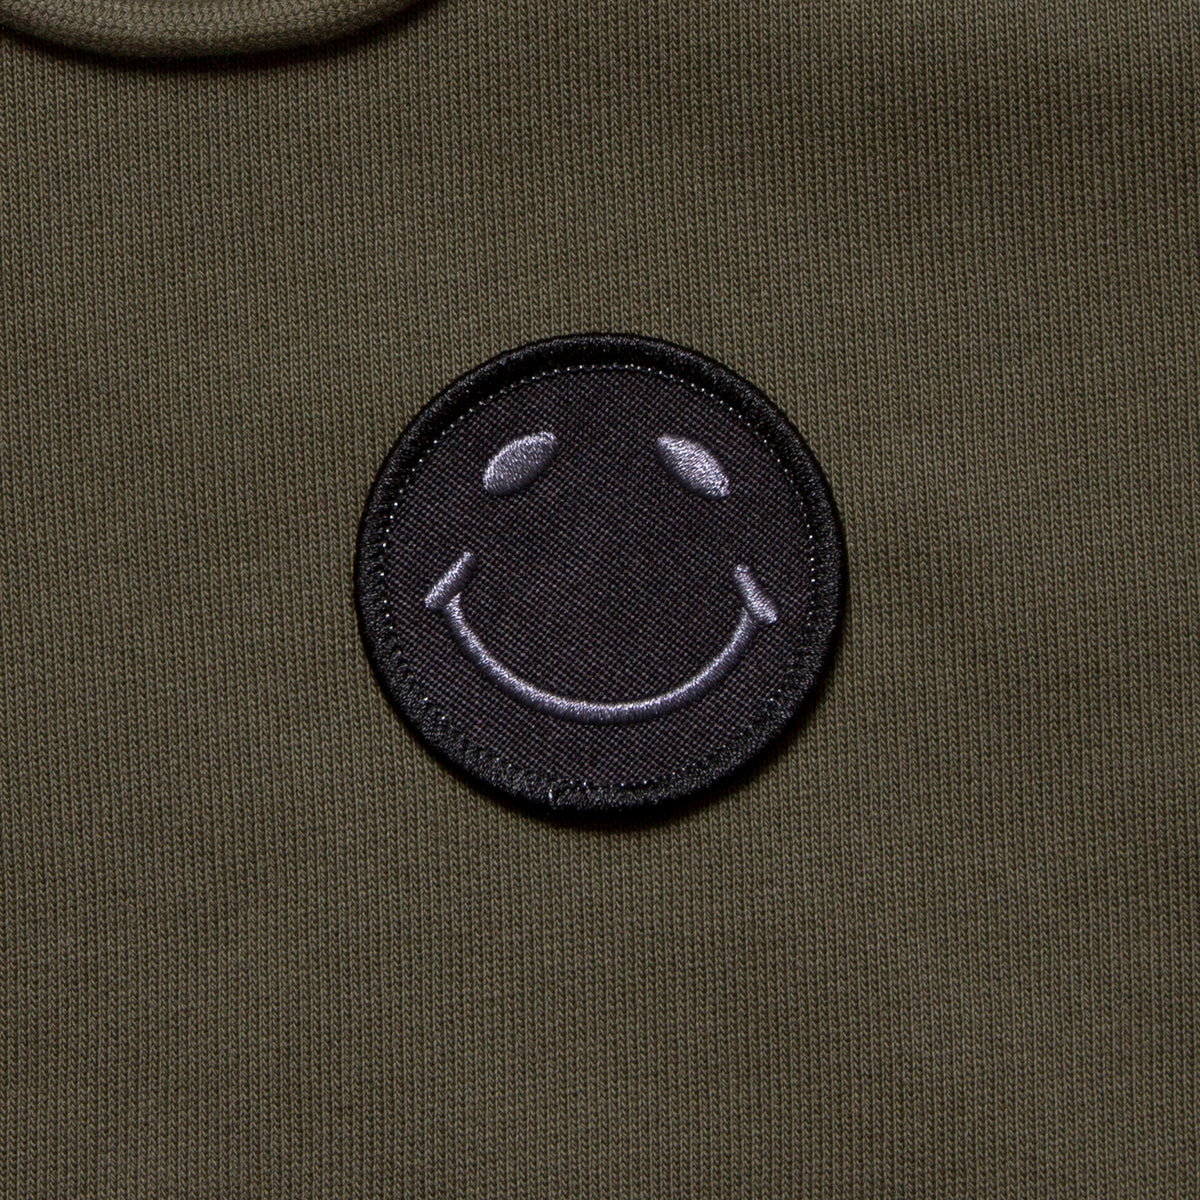 BB Smiley Crest - Zipped Hood - Khaki